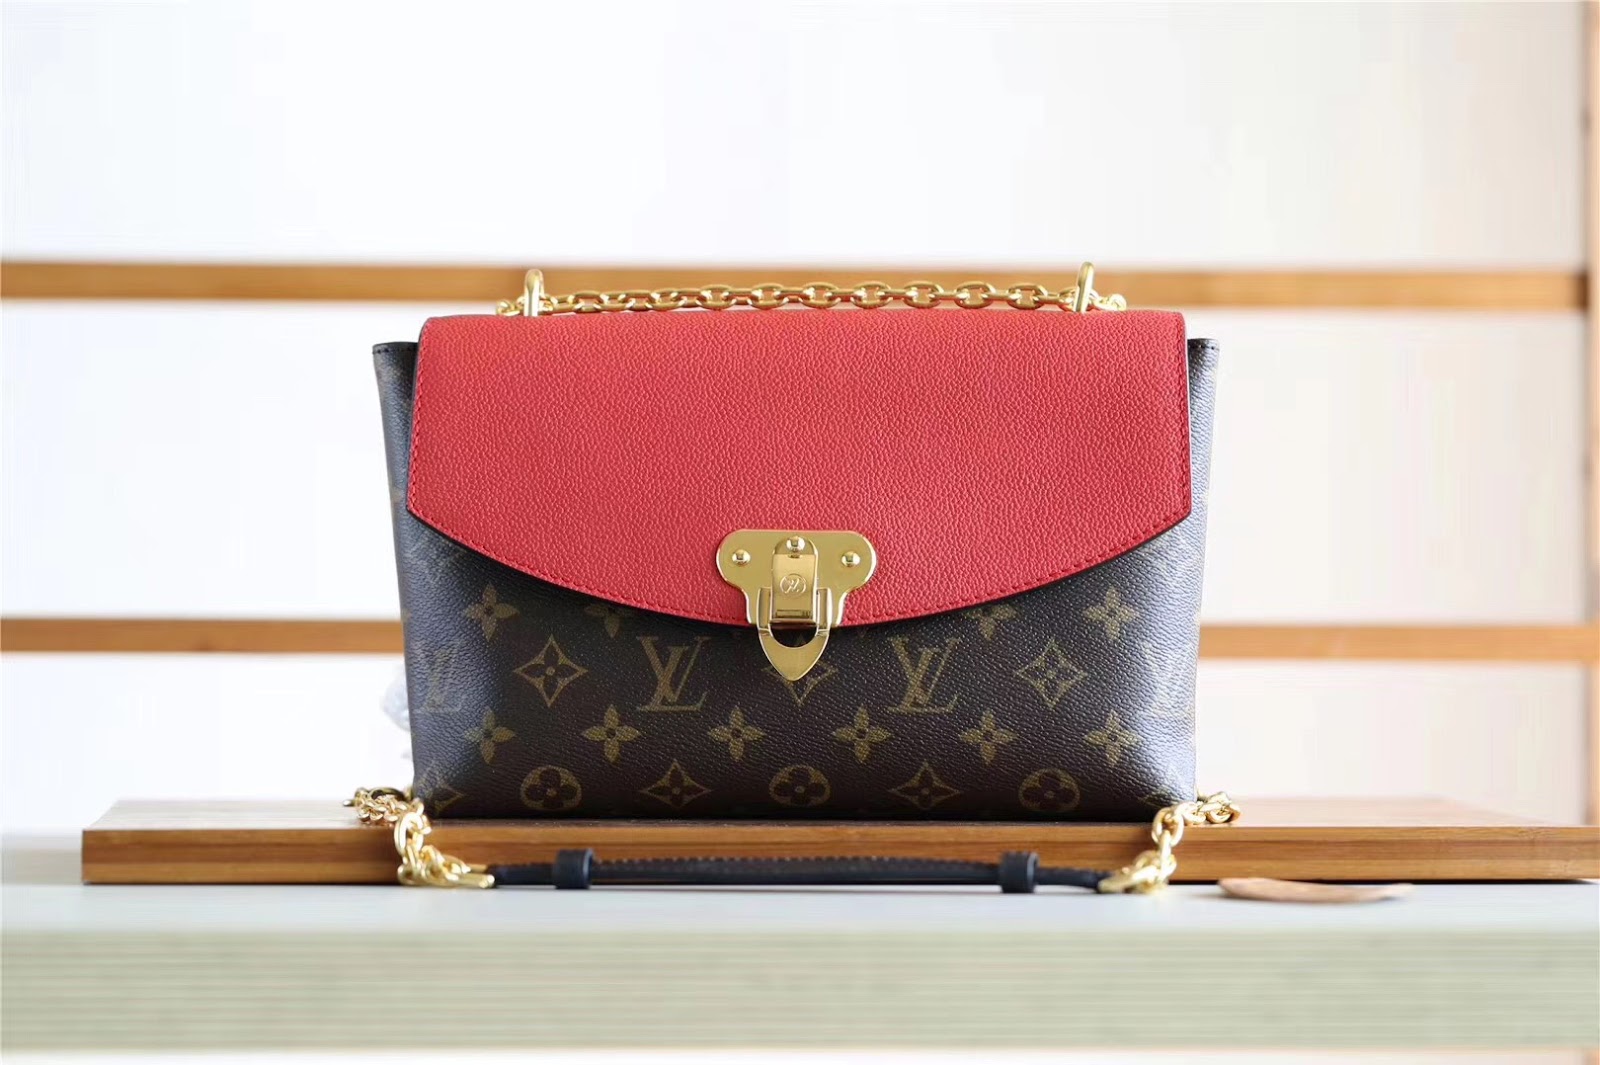 Shopper Share Review: Louis Vuitton Saint Placide Bag M43715 From 0